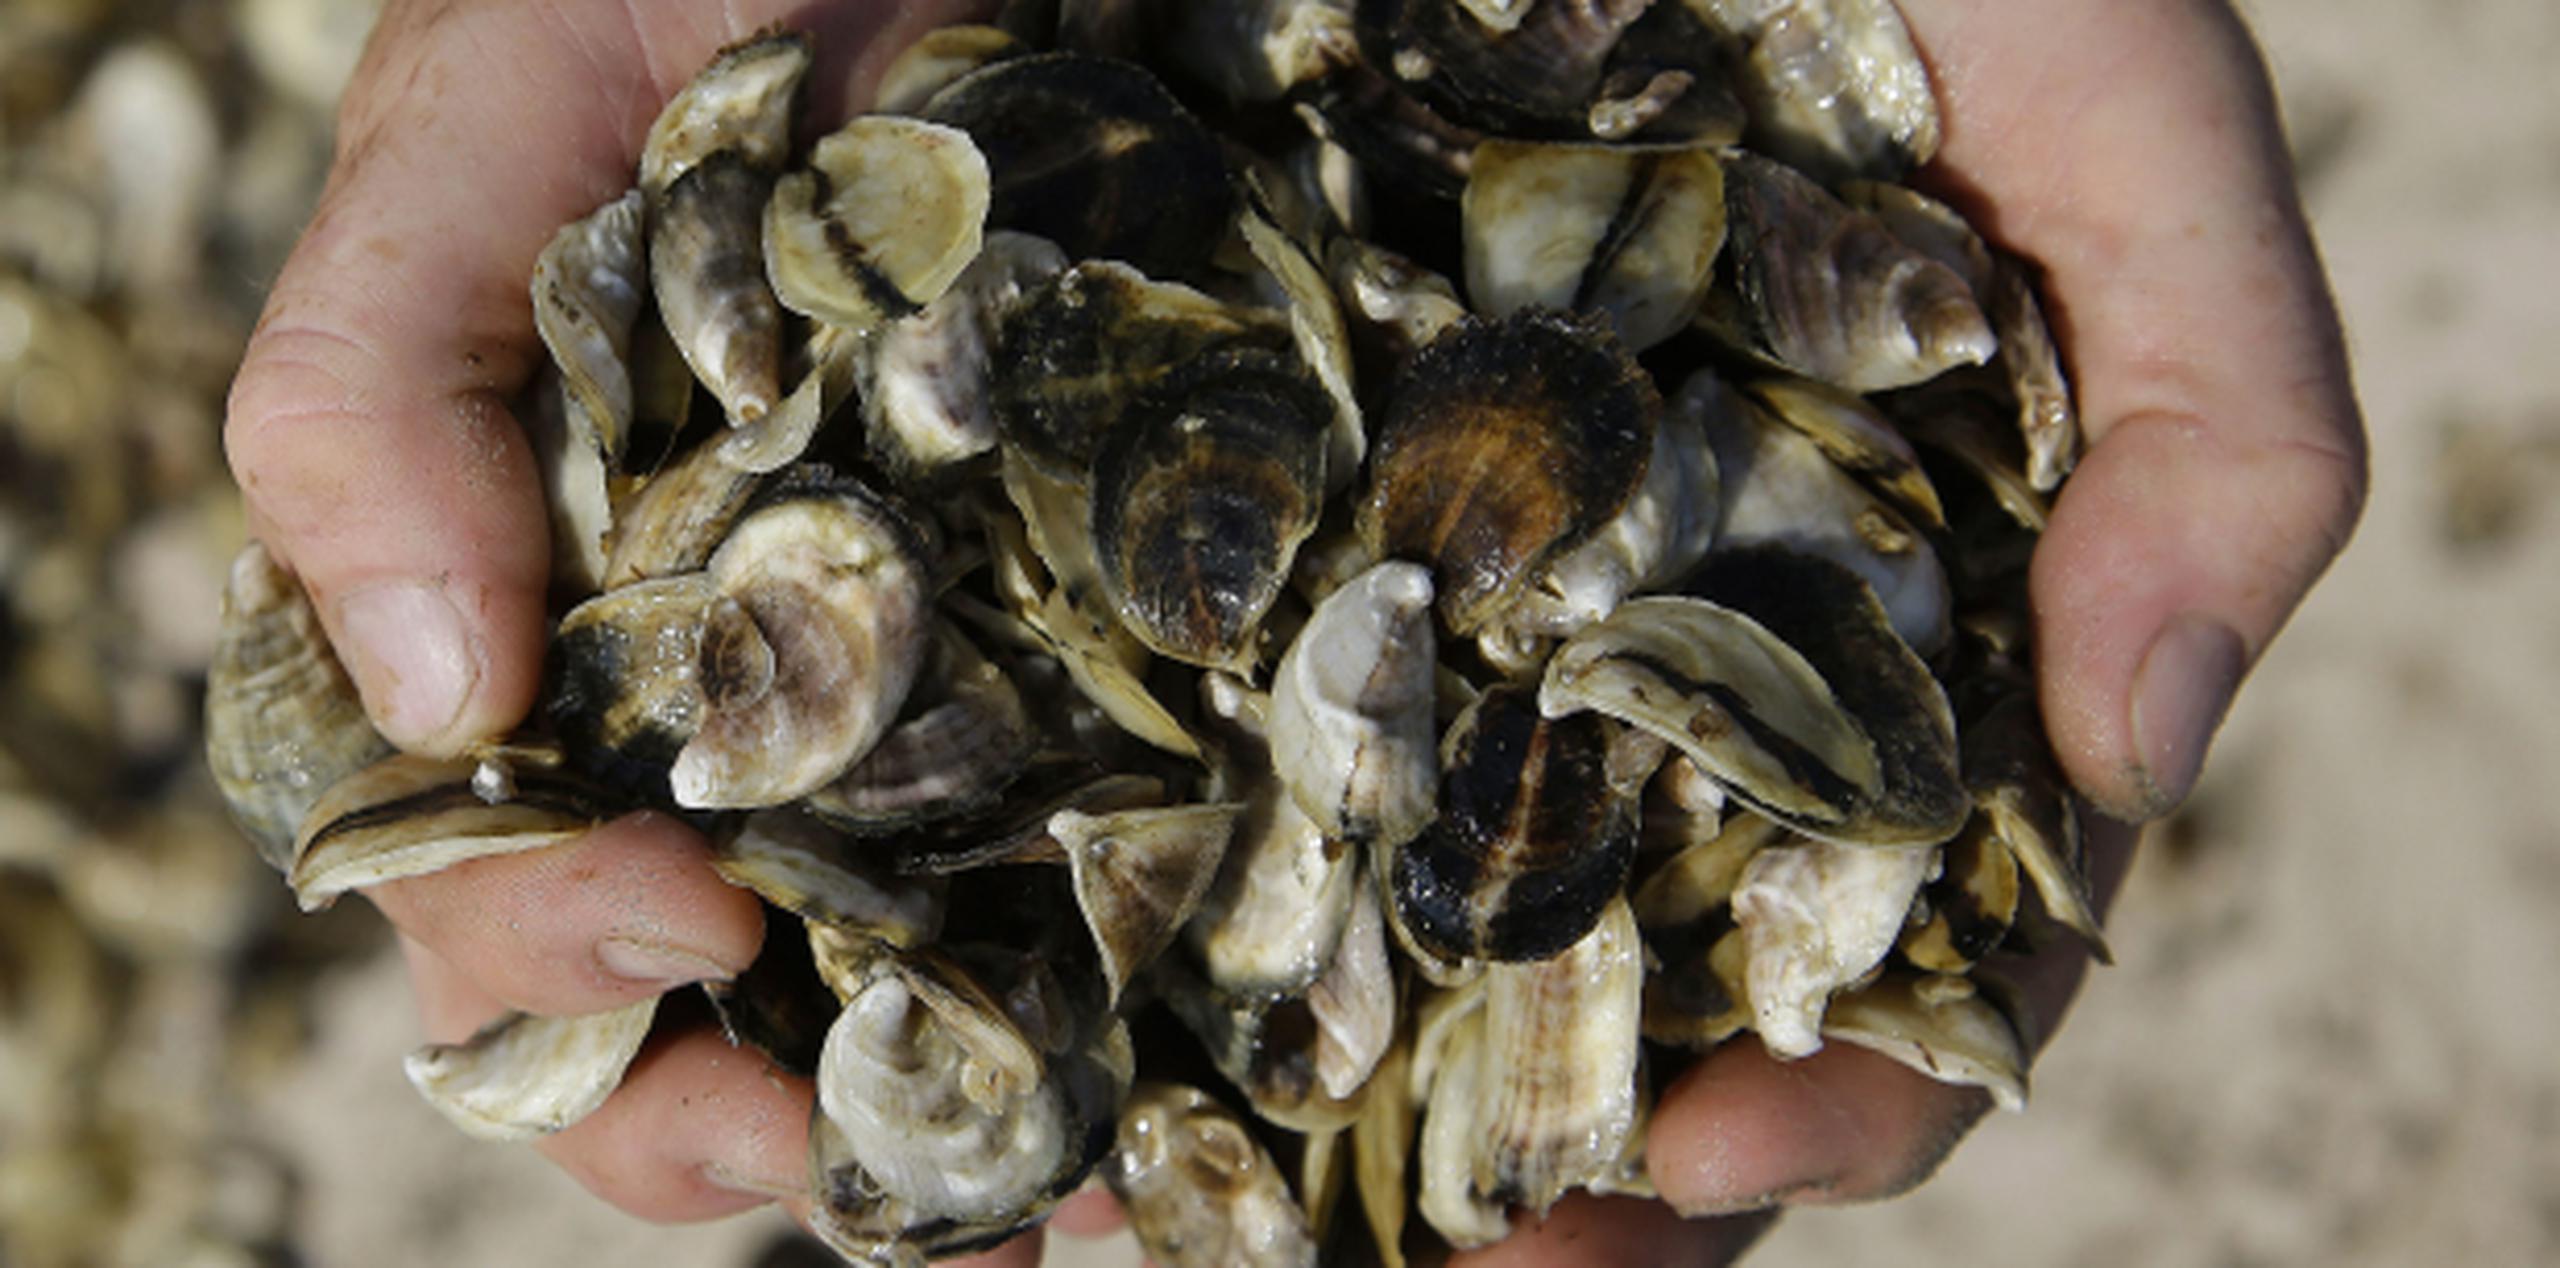 Los médicos recomiendan abstenerse de comer marisco crudo, especialmente ostras.  (AP/Stephan Savoia)